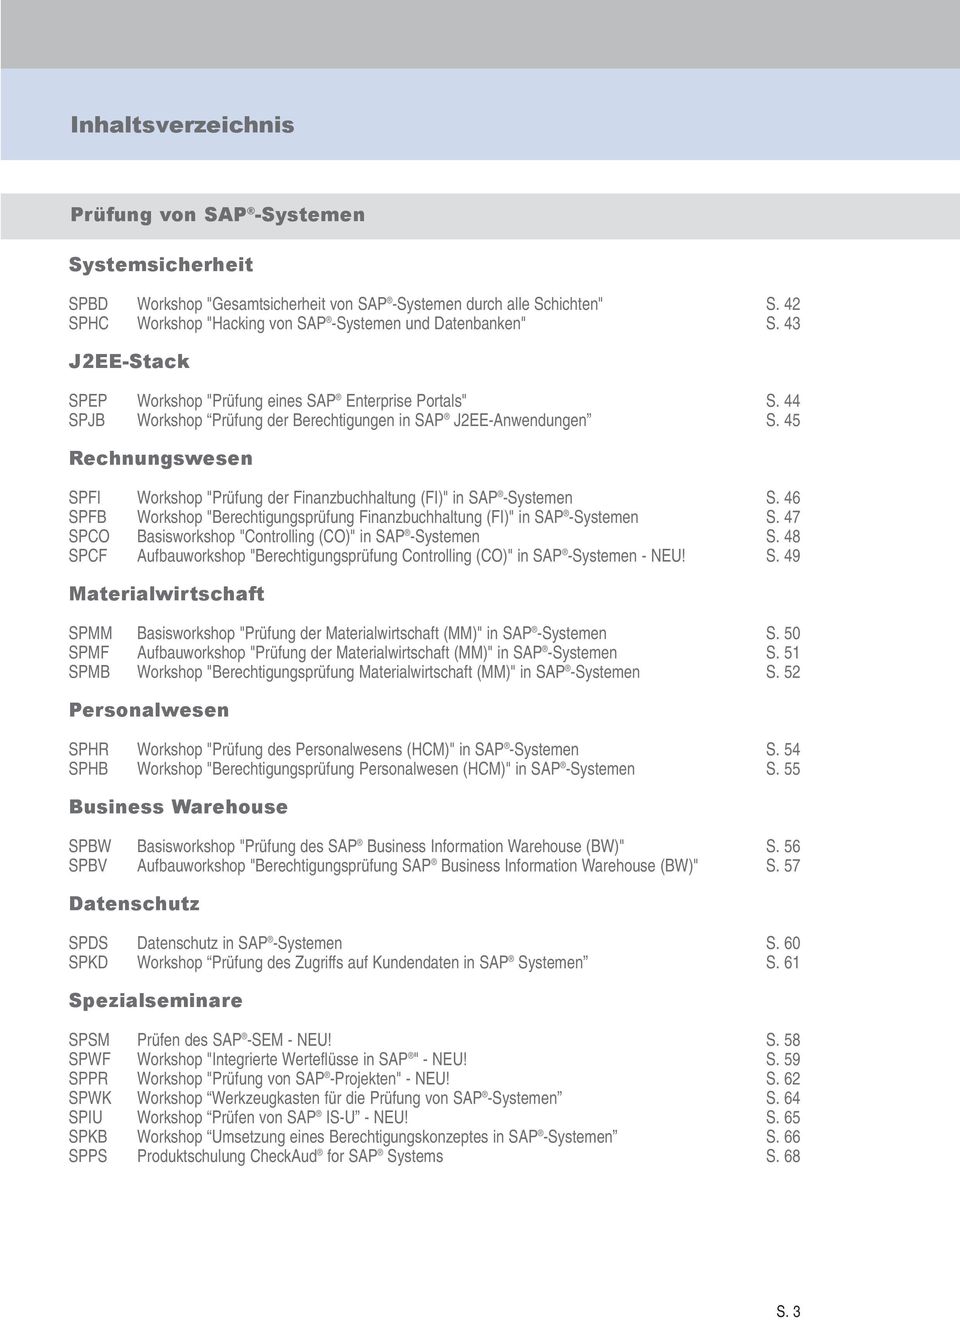 45 Rechnungswesen SPFI Workshop "Prüfung der Finanzbuchhaltung (FI)" in SAP -Systemen S. 46 SPFB Workshop "Berechtigungsprüfung Finanzbuchhaltung (FI)" in SAP -Systemen S.